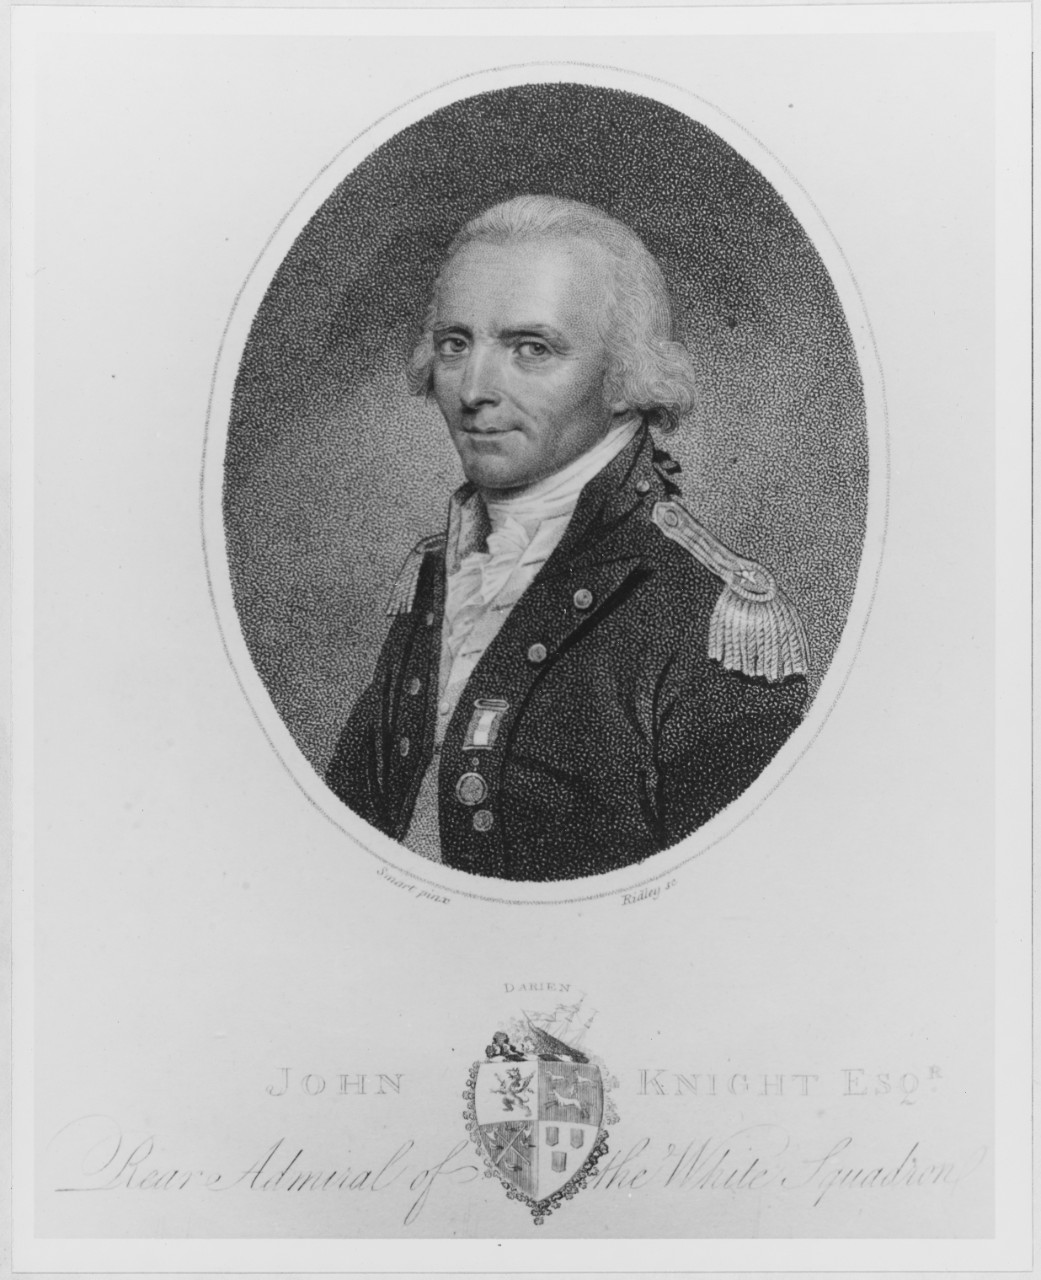 Sir John Knight, Rear Admiral, Royal Navy